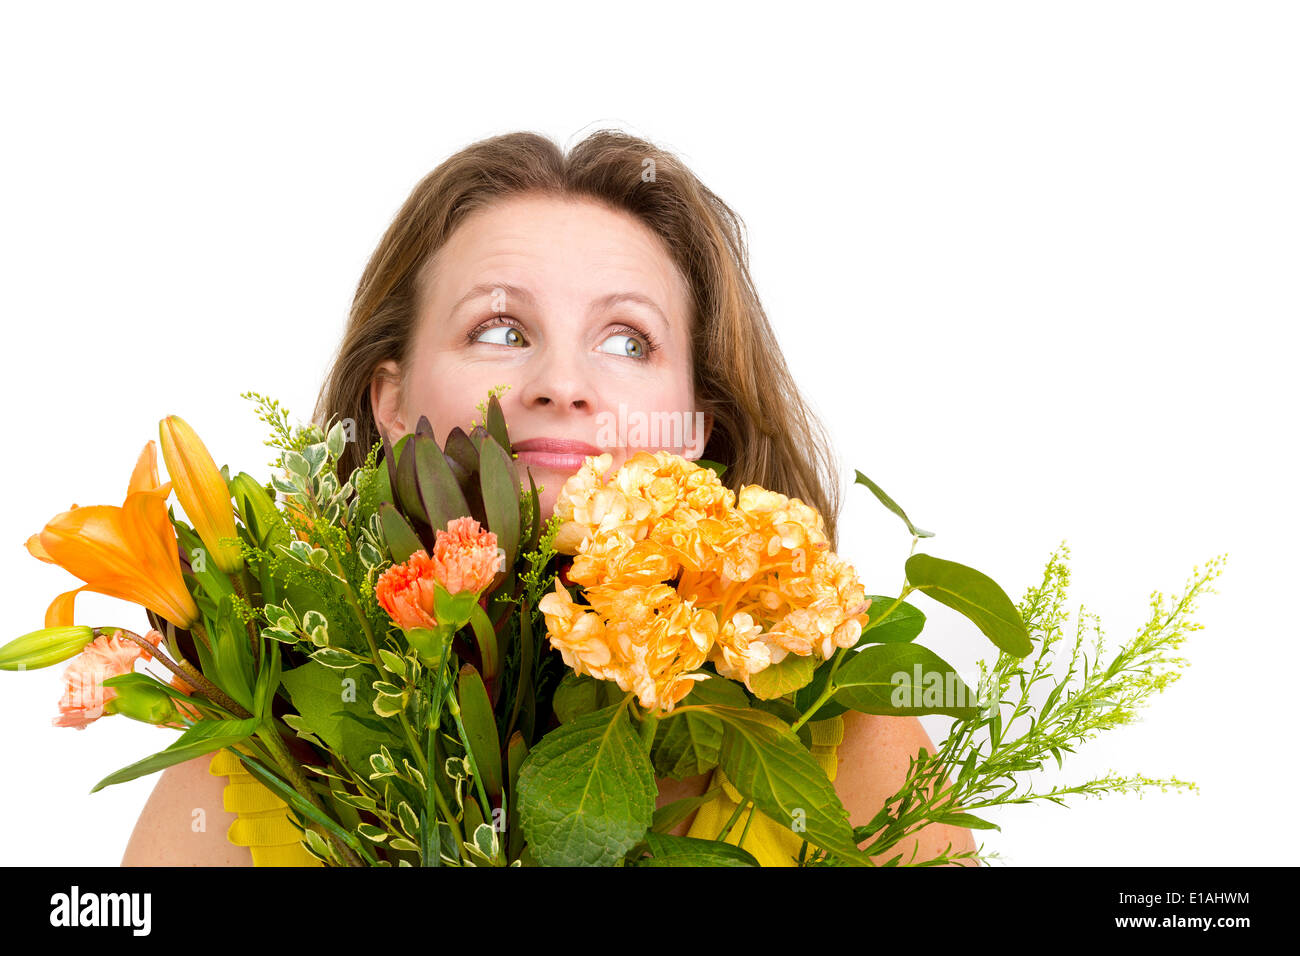 Felice donna che guarda verso l'alto dietro il mazzo di fiori che esprime i suoi sentimenti positivi genuinamente Foto Stock